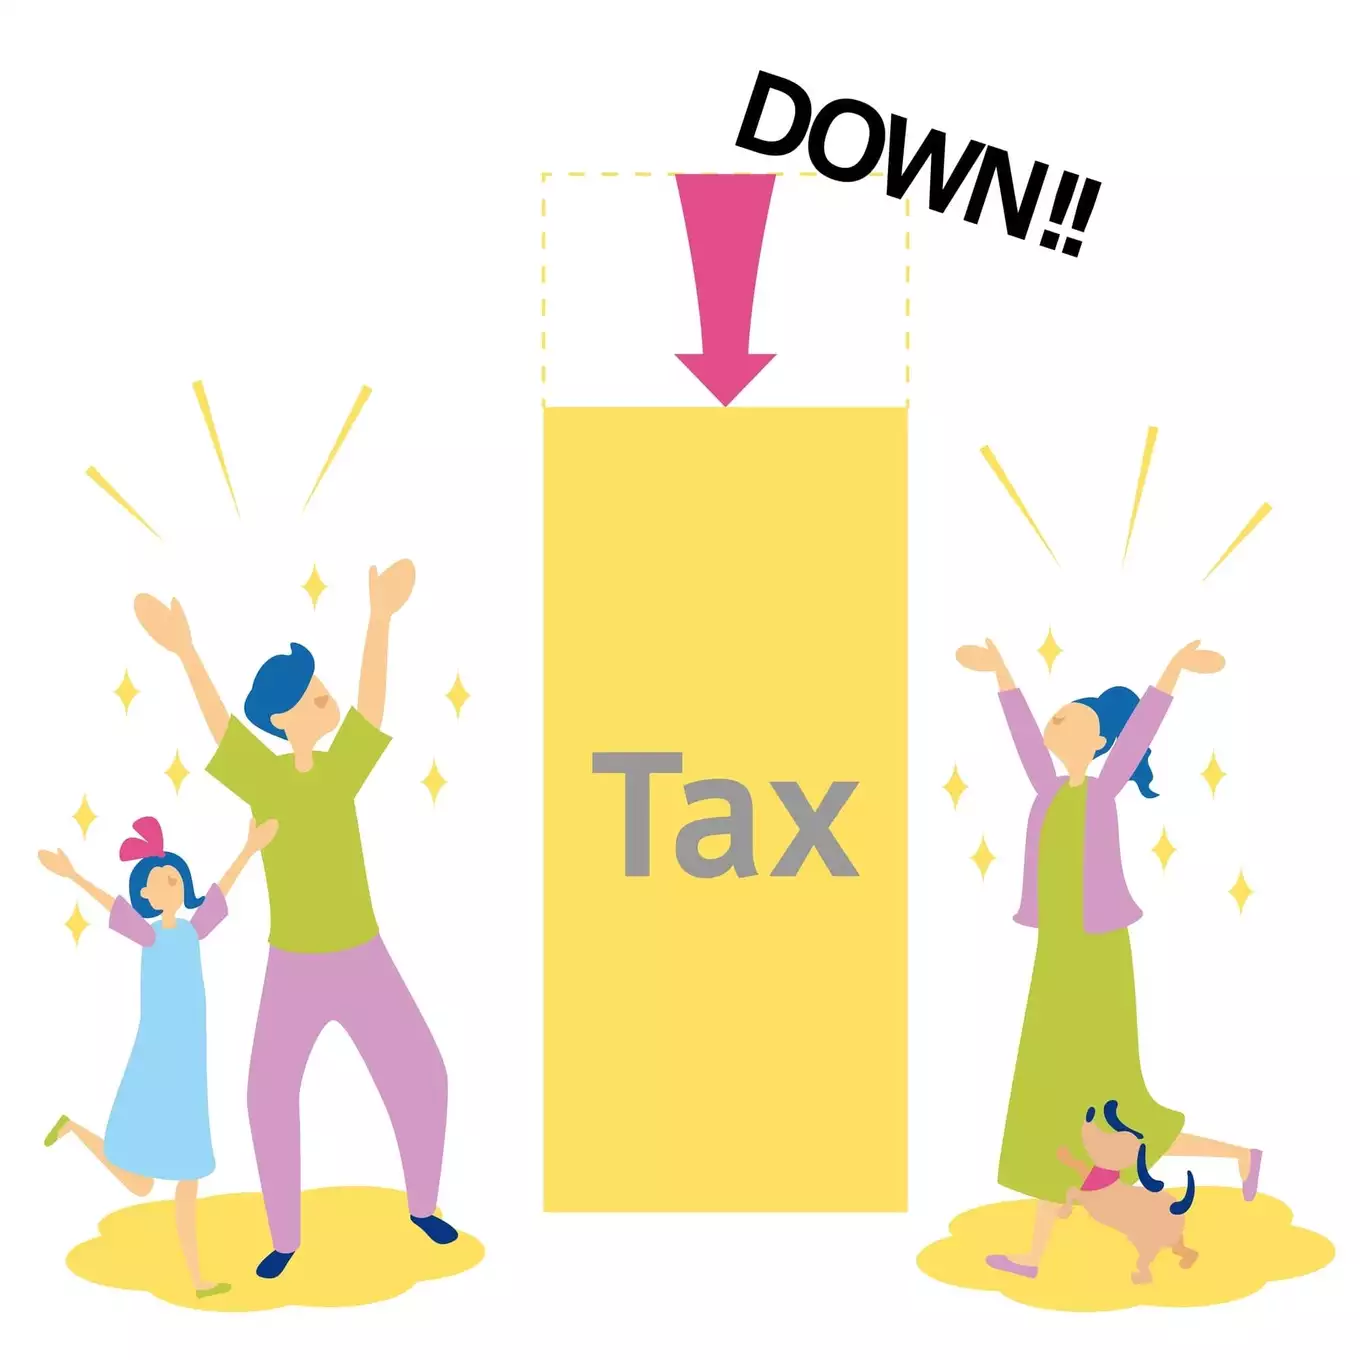 税金の控除に喜ぶ家族、減税